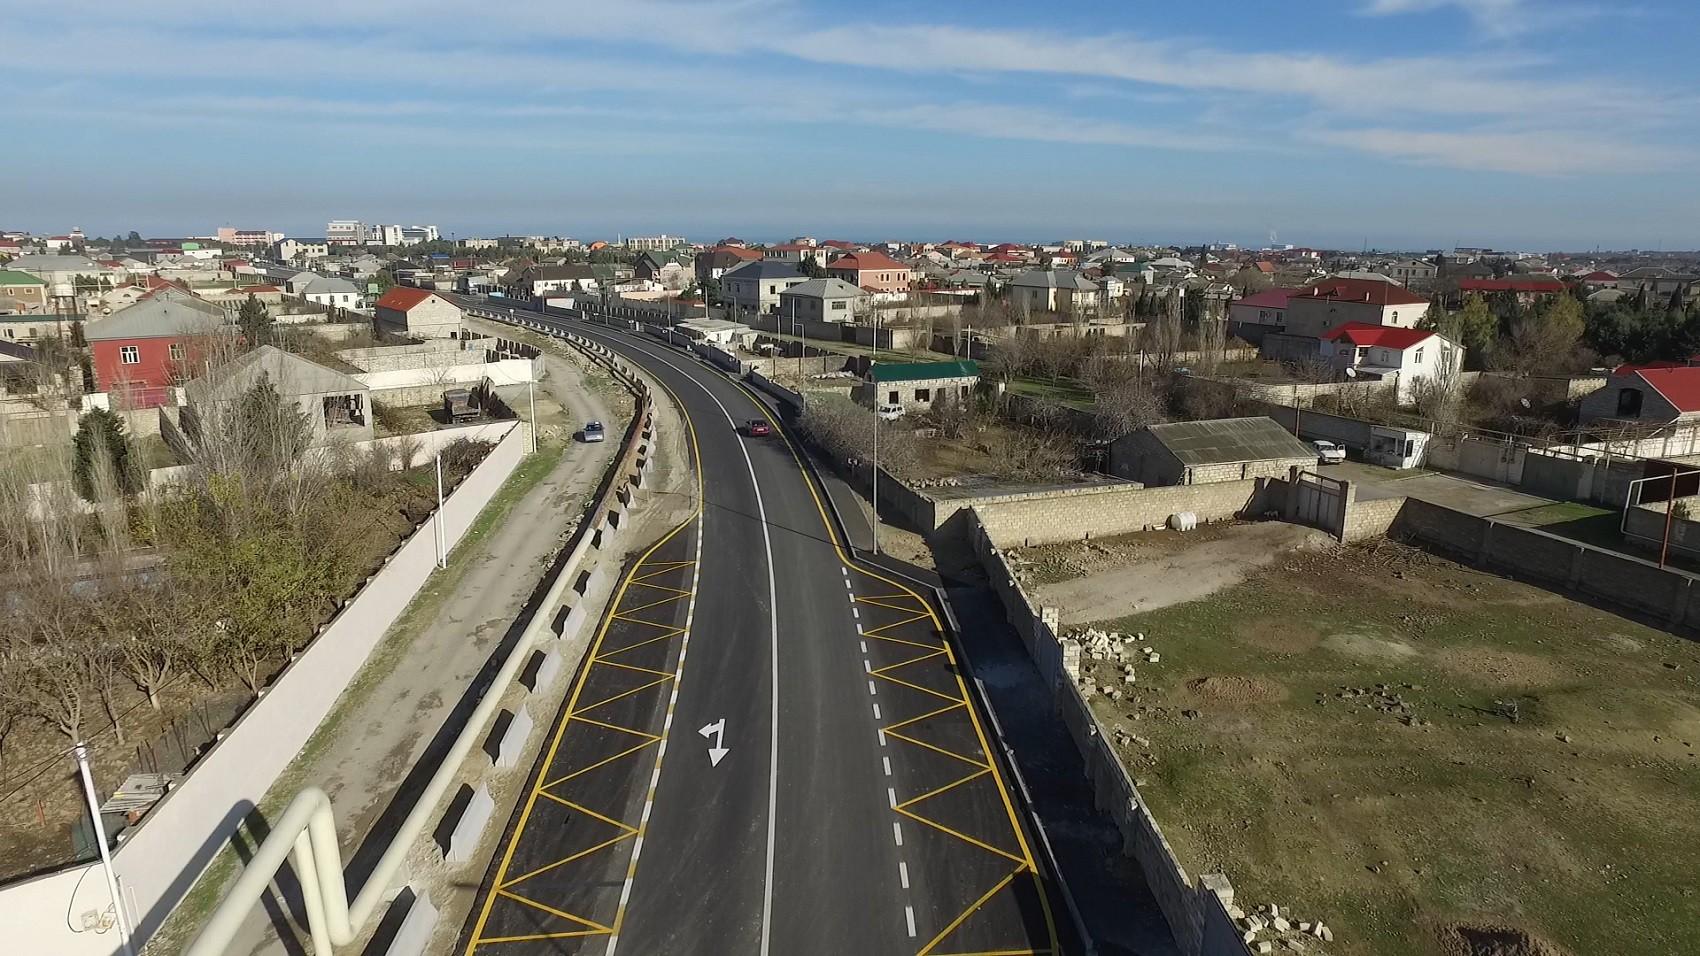 Завершилось строительство одной из бакинских дорог (ФОТО/ВИДЕО)